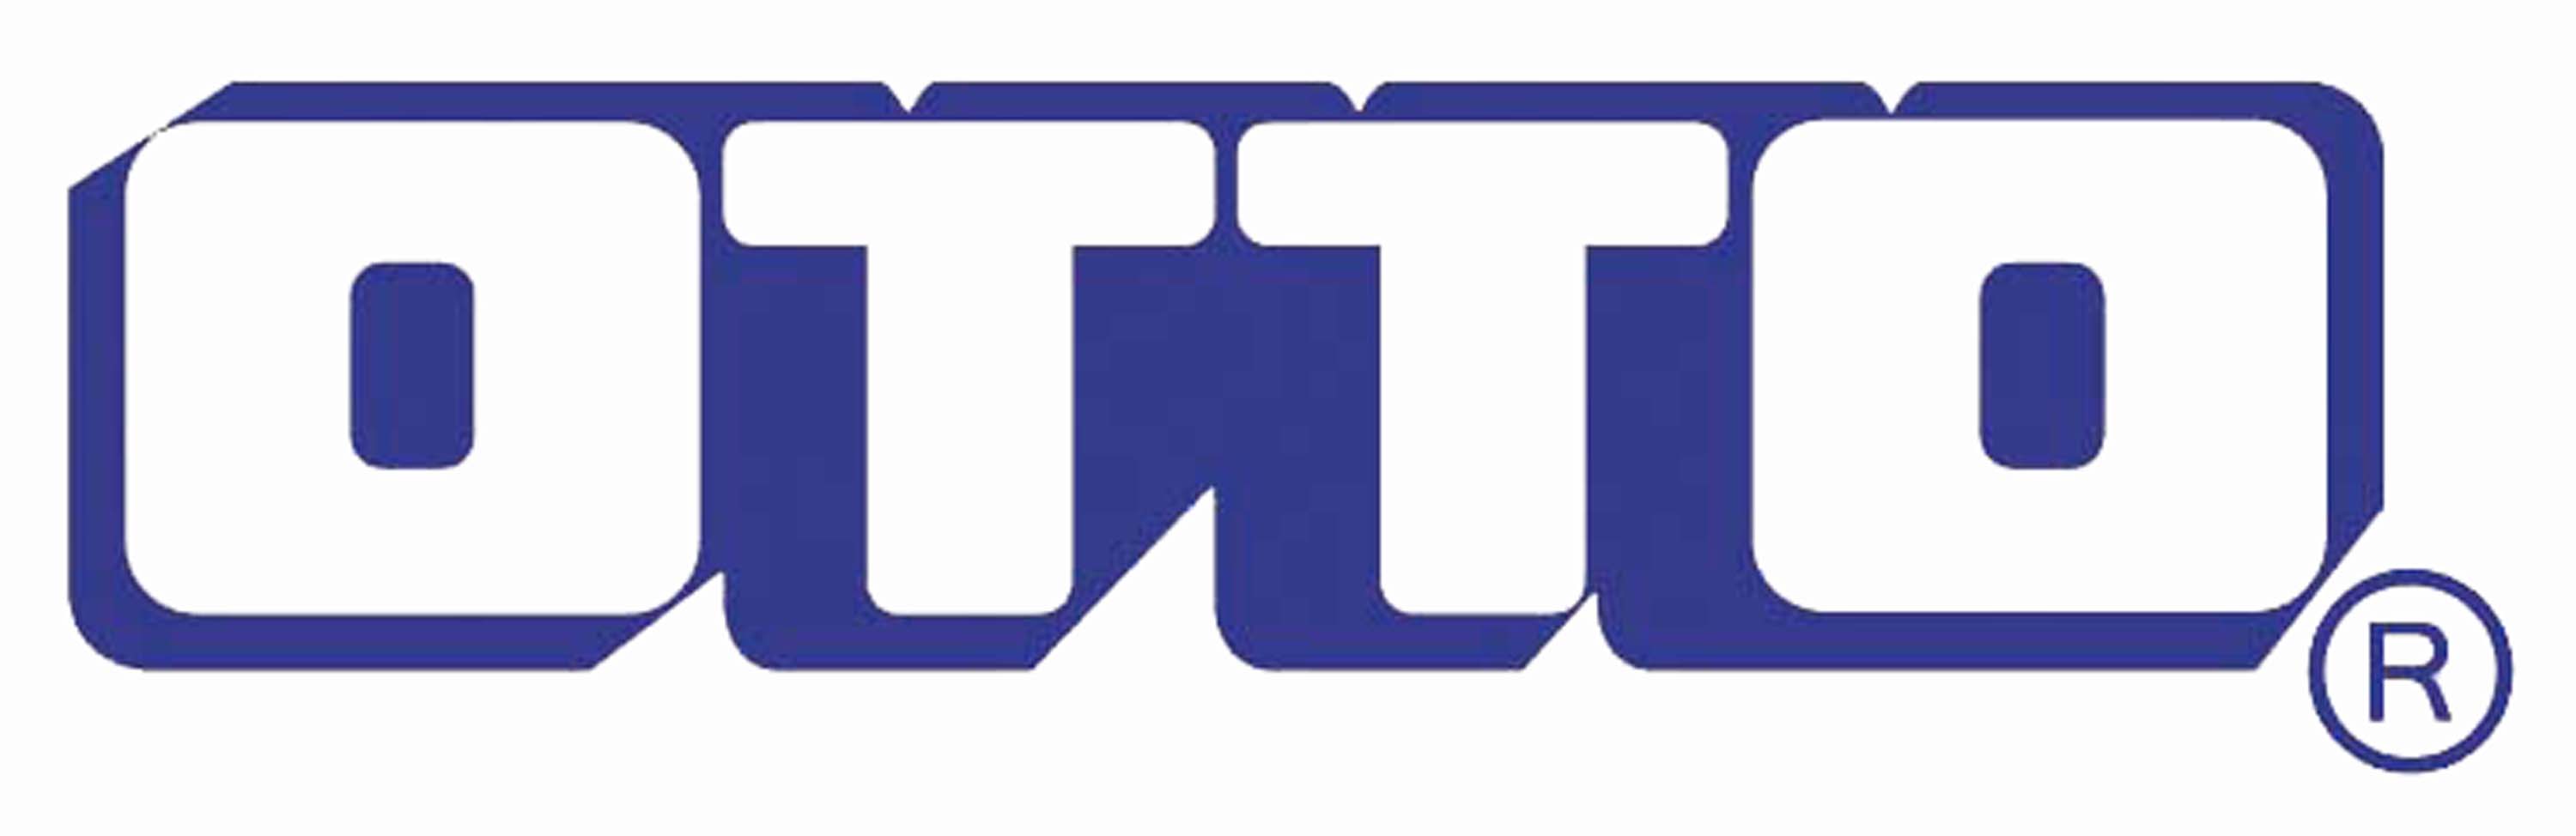 logo โลโก้ บริษัท ออตโต้ คิงส์กลาส จำกัด 